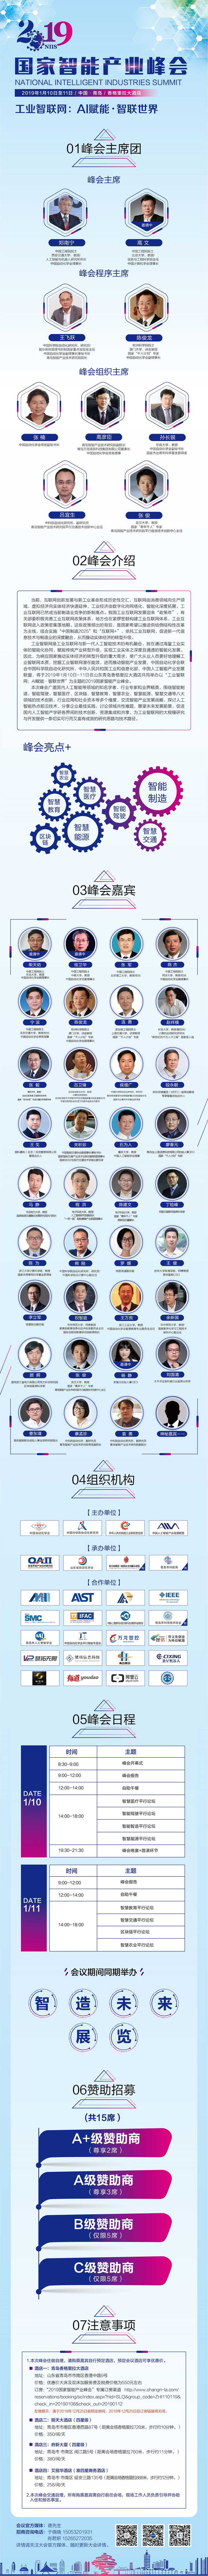 2019国家智能产业峰会